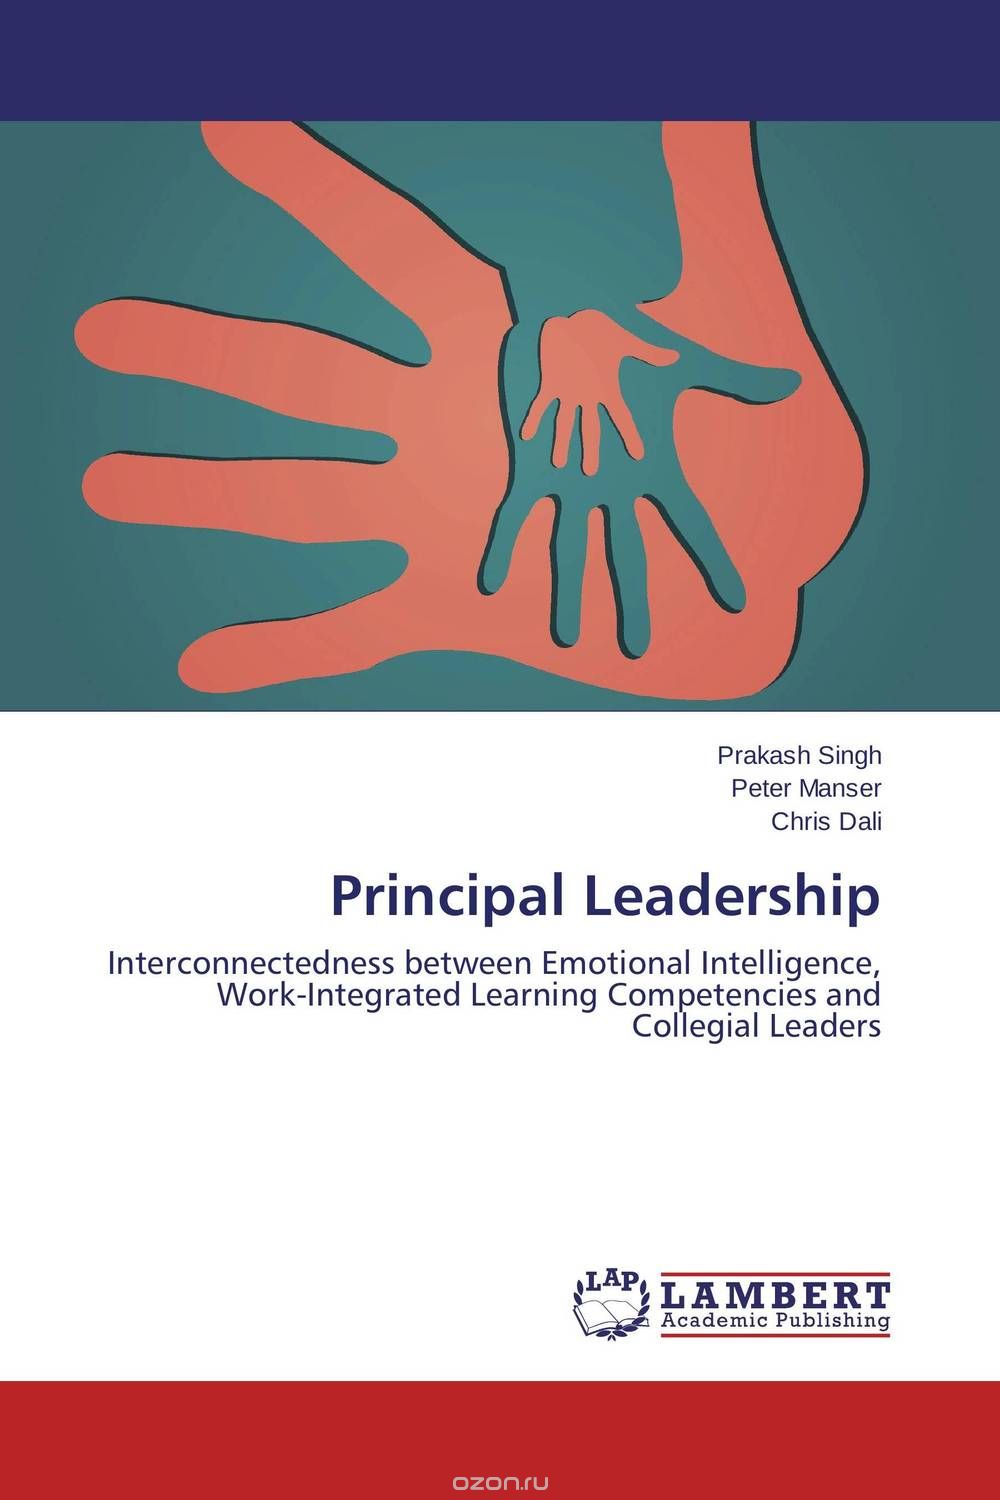 Скачать книгу "Principal Leadership"